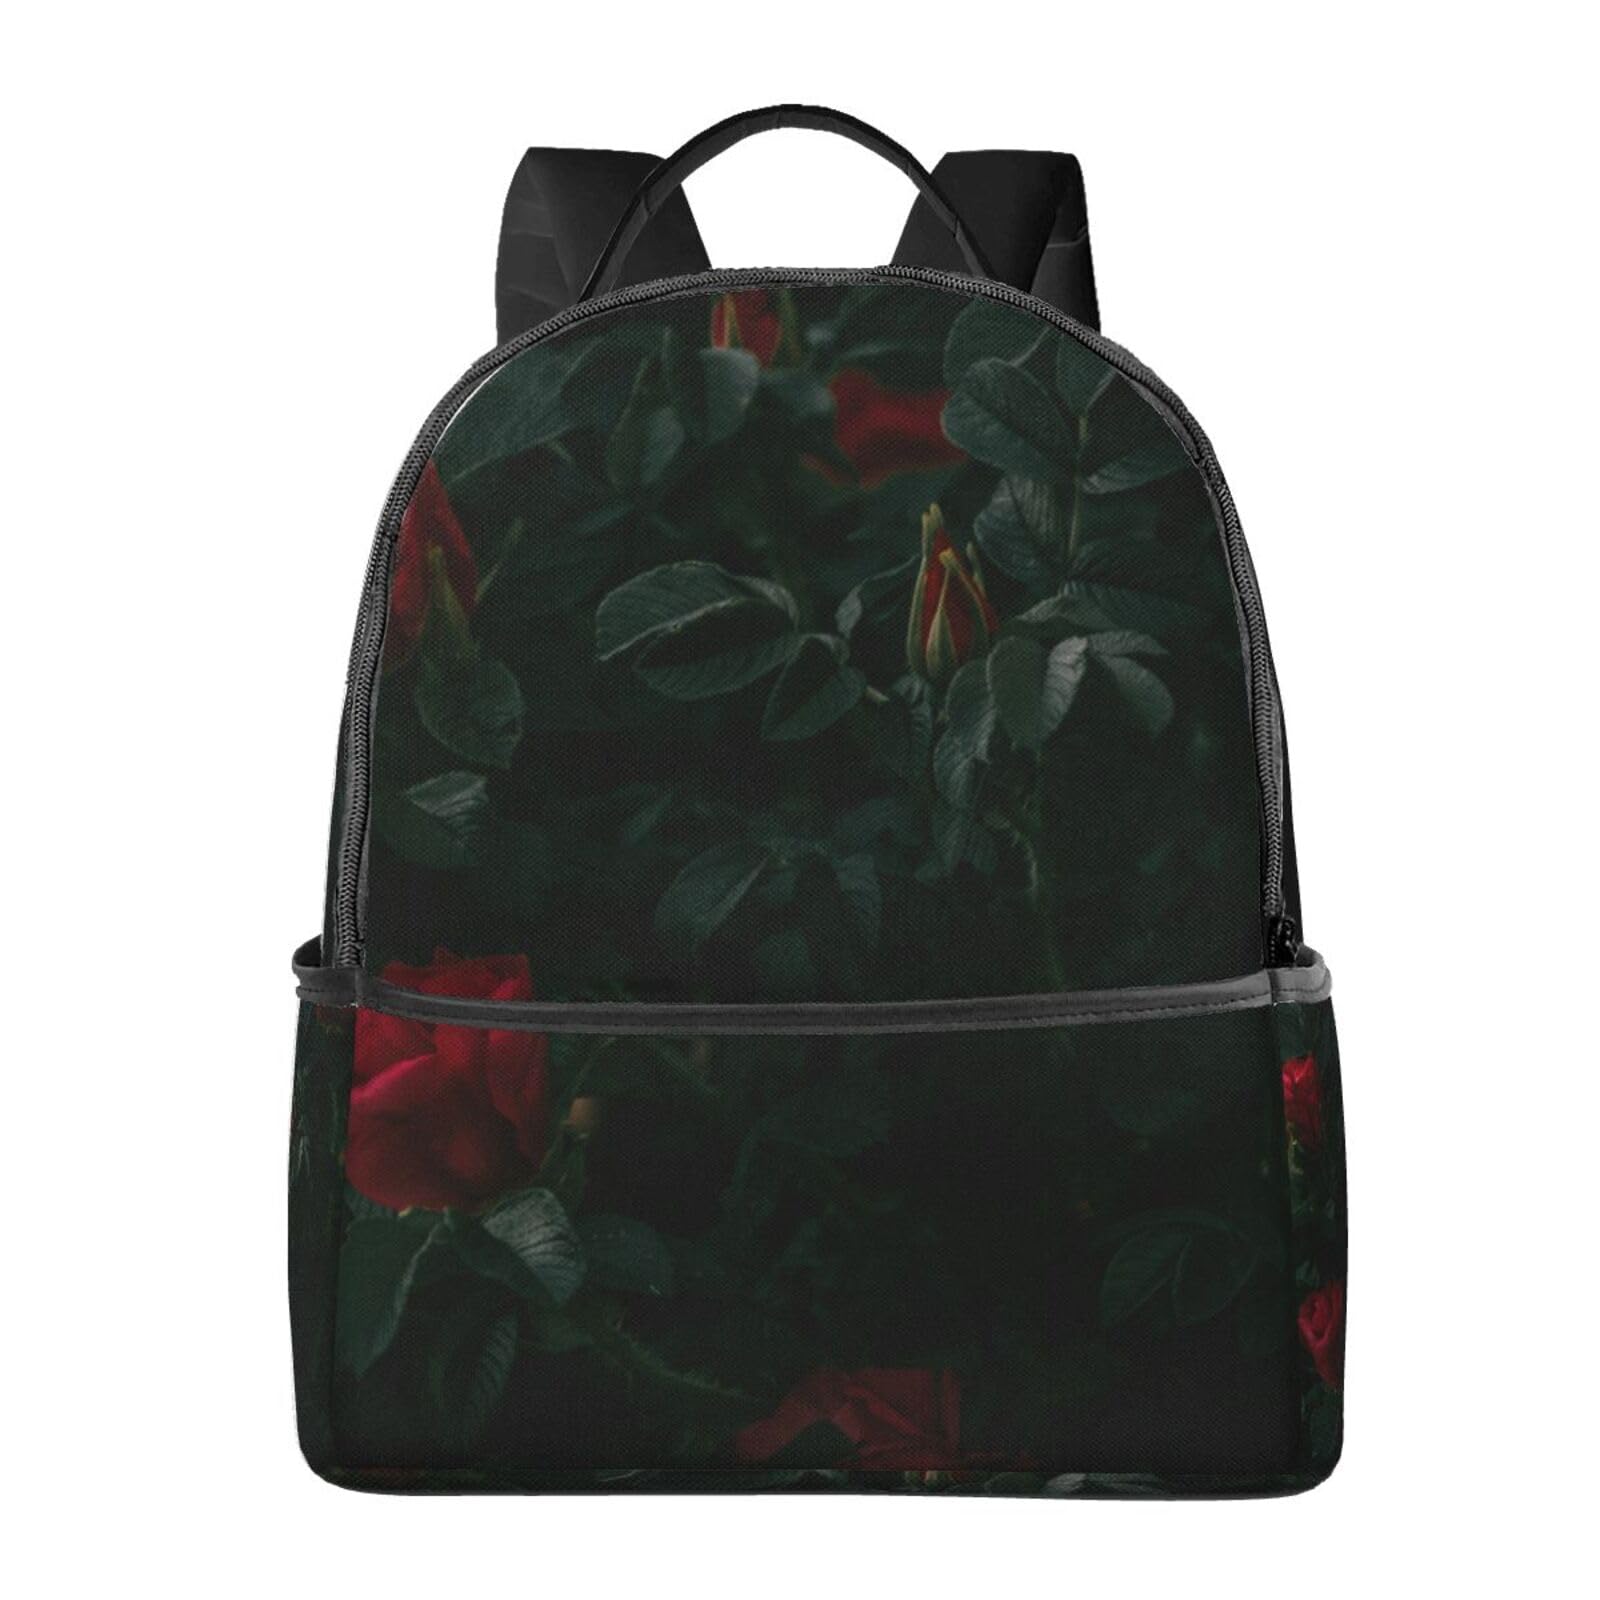 送料無料EVANEM Laptop Backpack Lightweight Travel Backpack Shoulders Bag Red Roses Printed For Travel Men Women並行輸